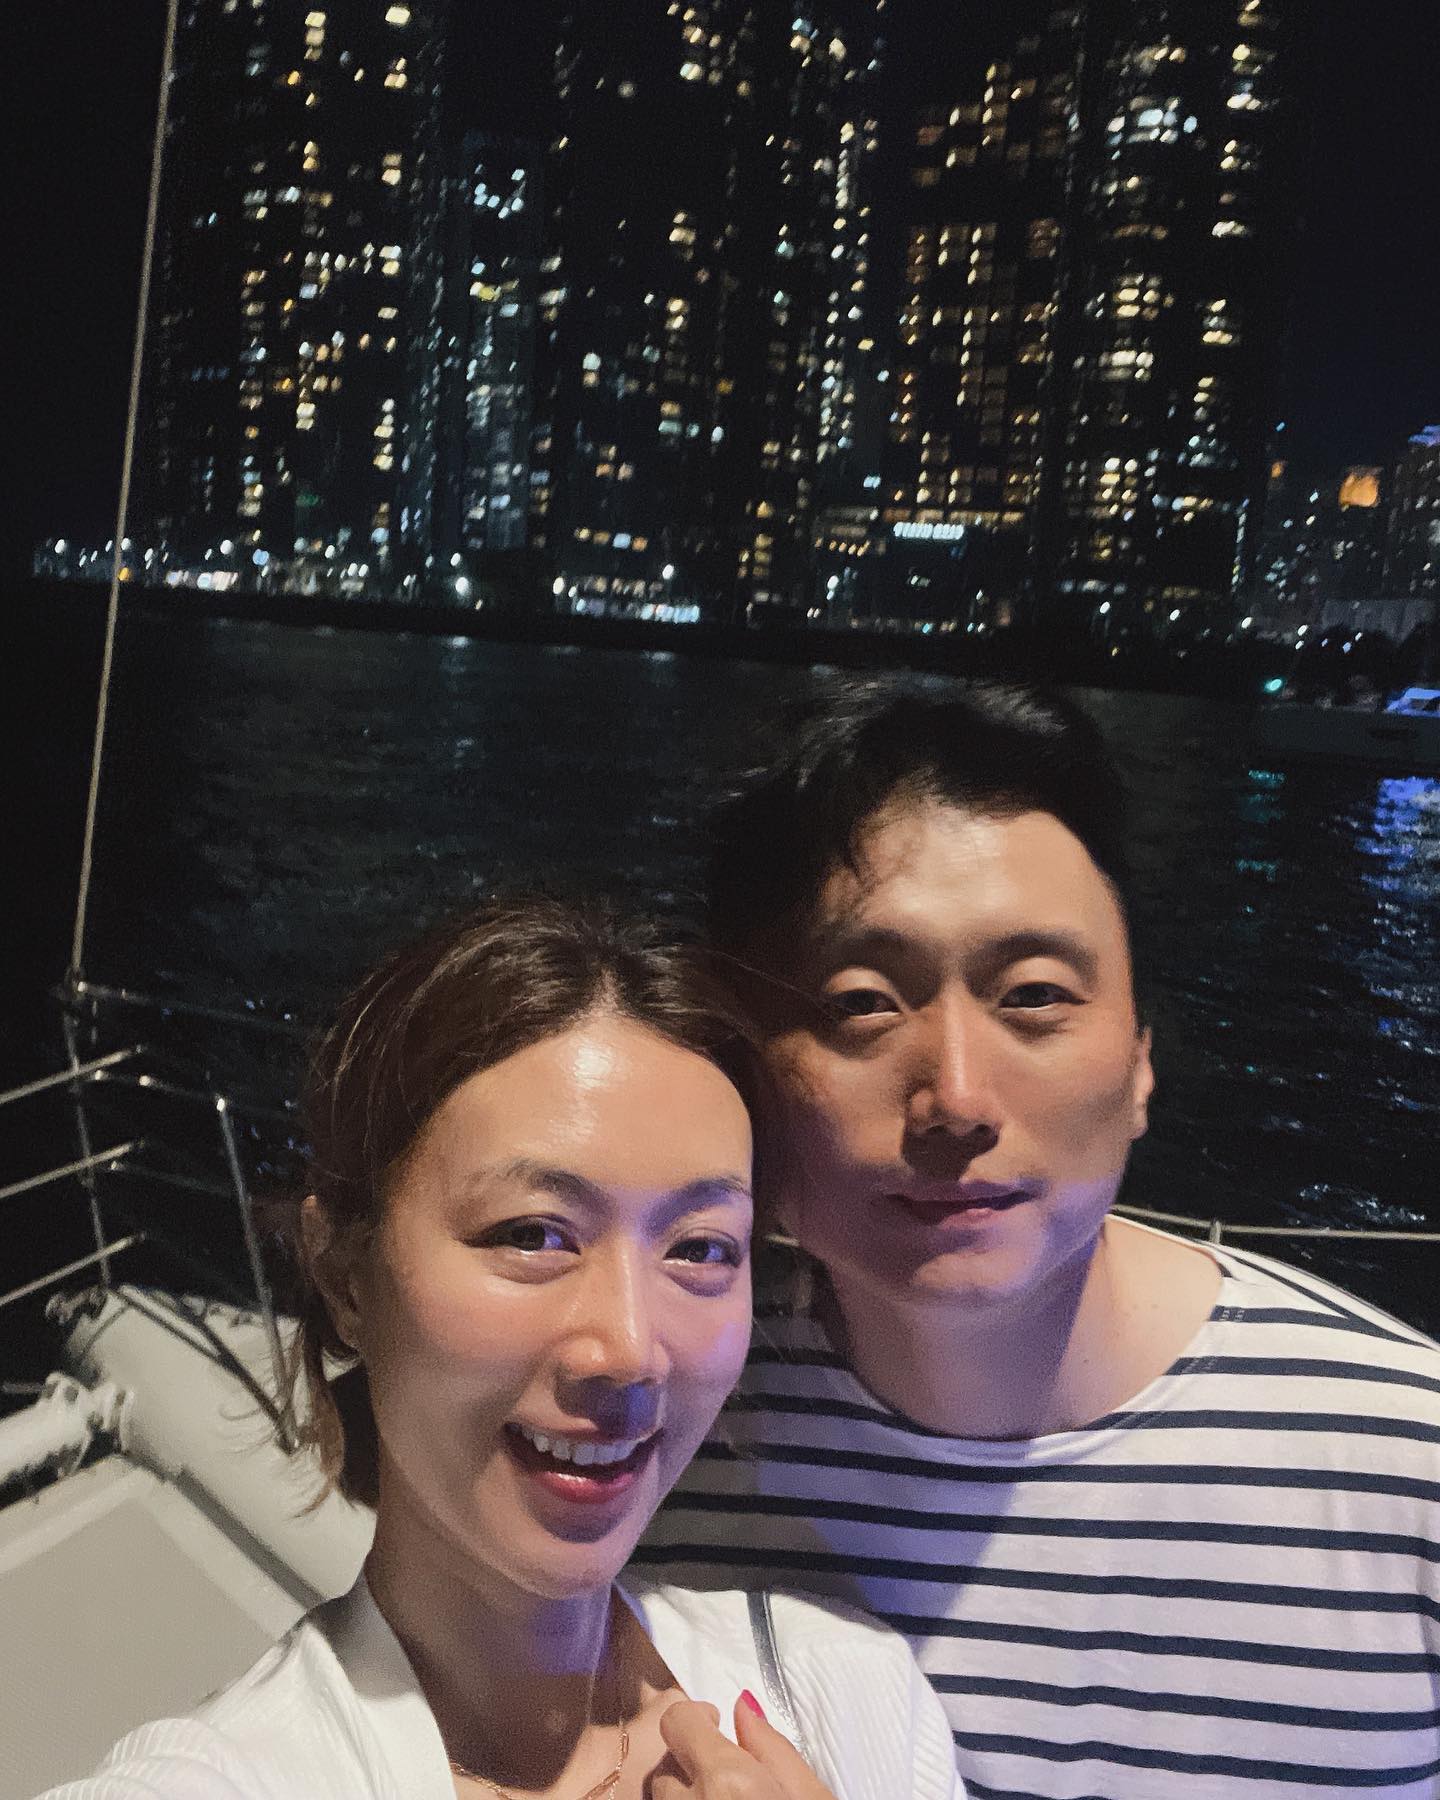 Seo Hyun-jin, Suami dokter dan selfie bulan di kapal pesiar “Aku akan mengingatnya selamanya”